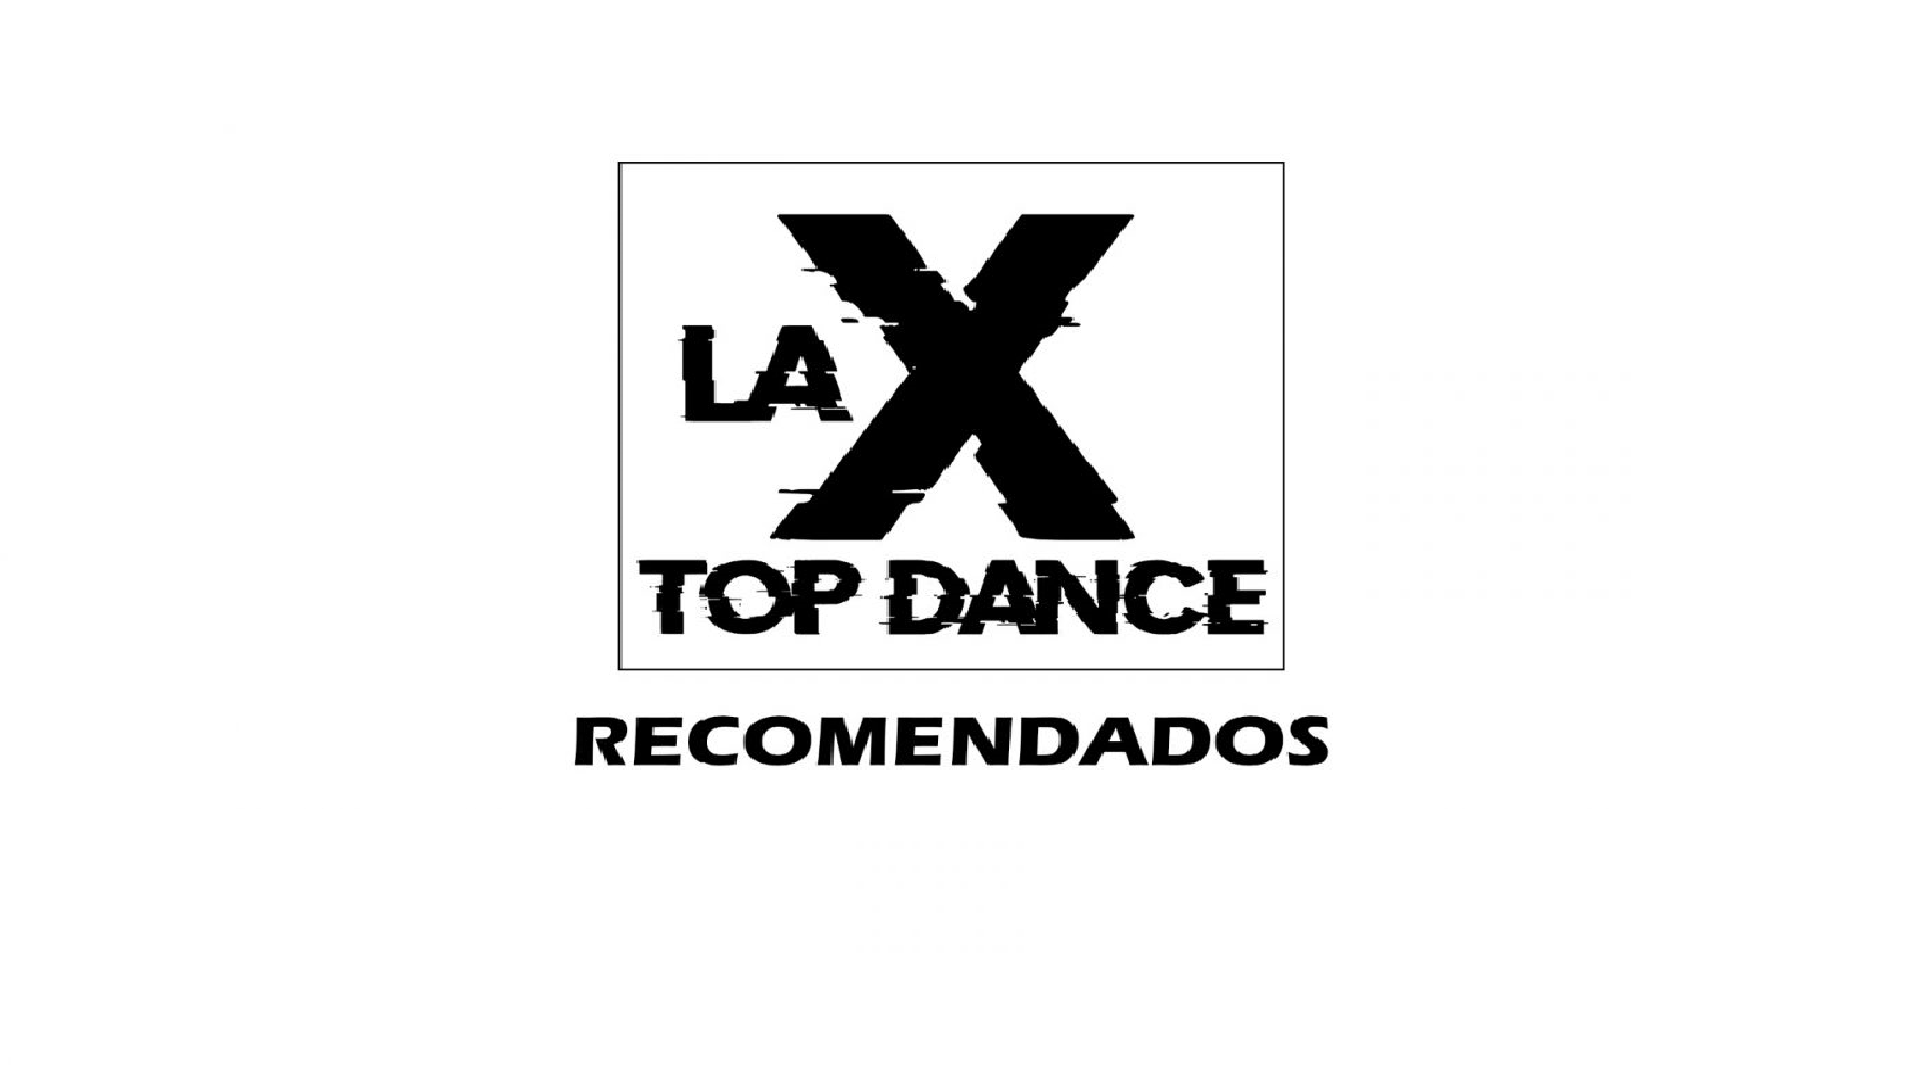 LA X TOP DANCE RECOMENDADOS  04 DEJUNIO